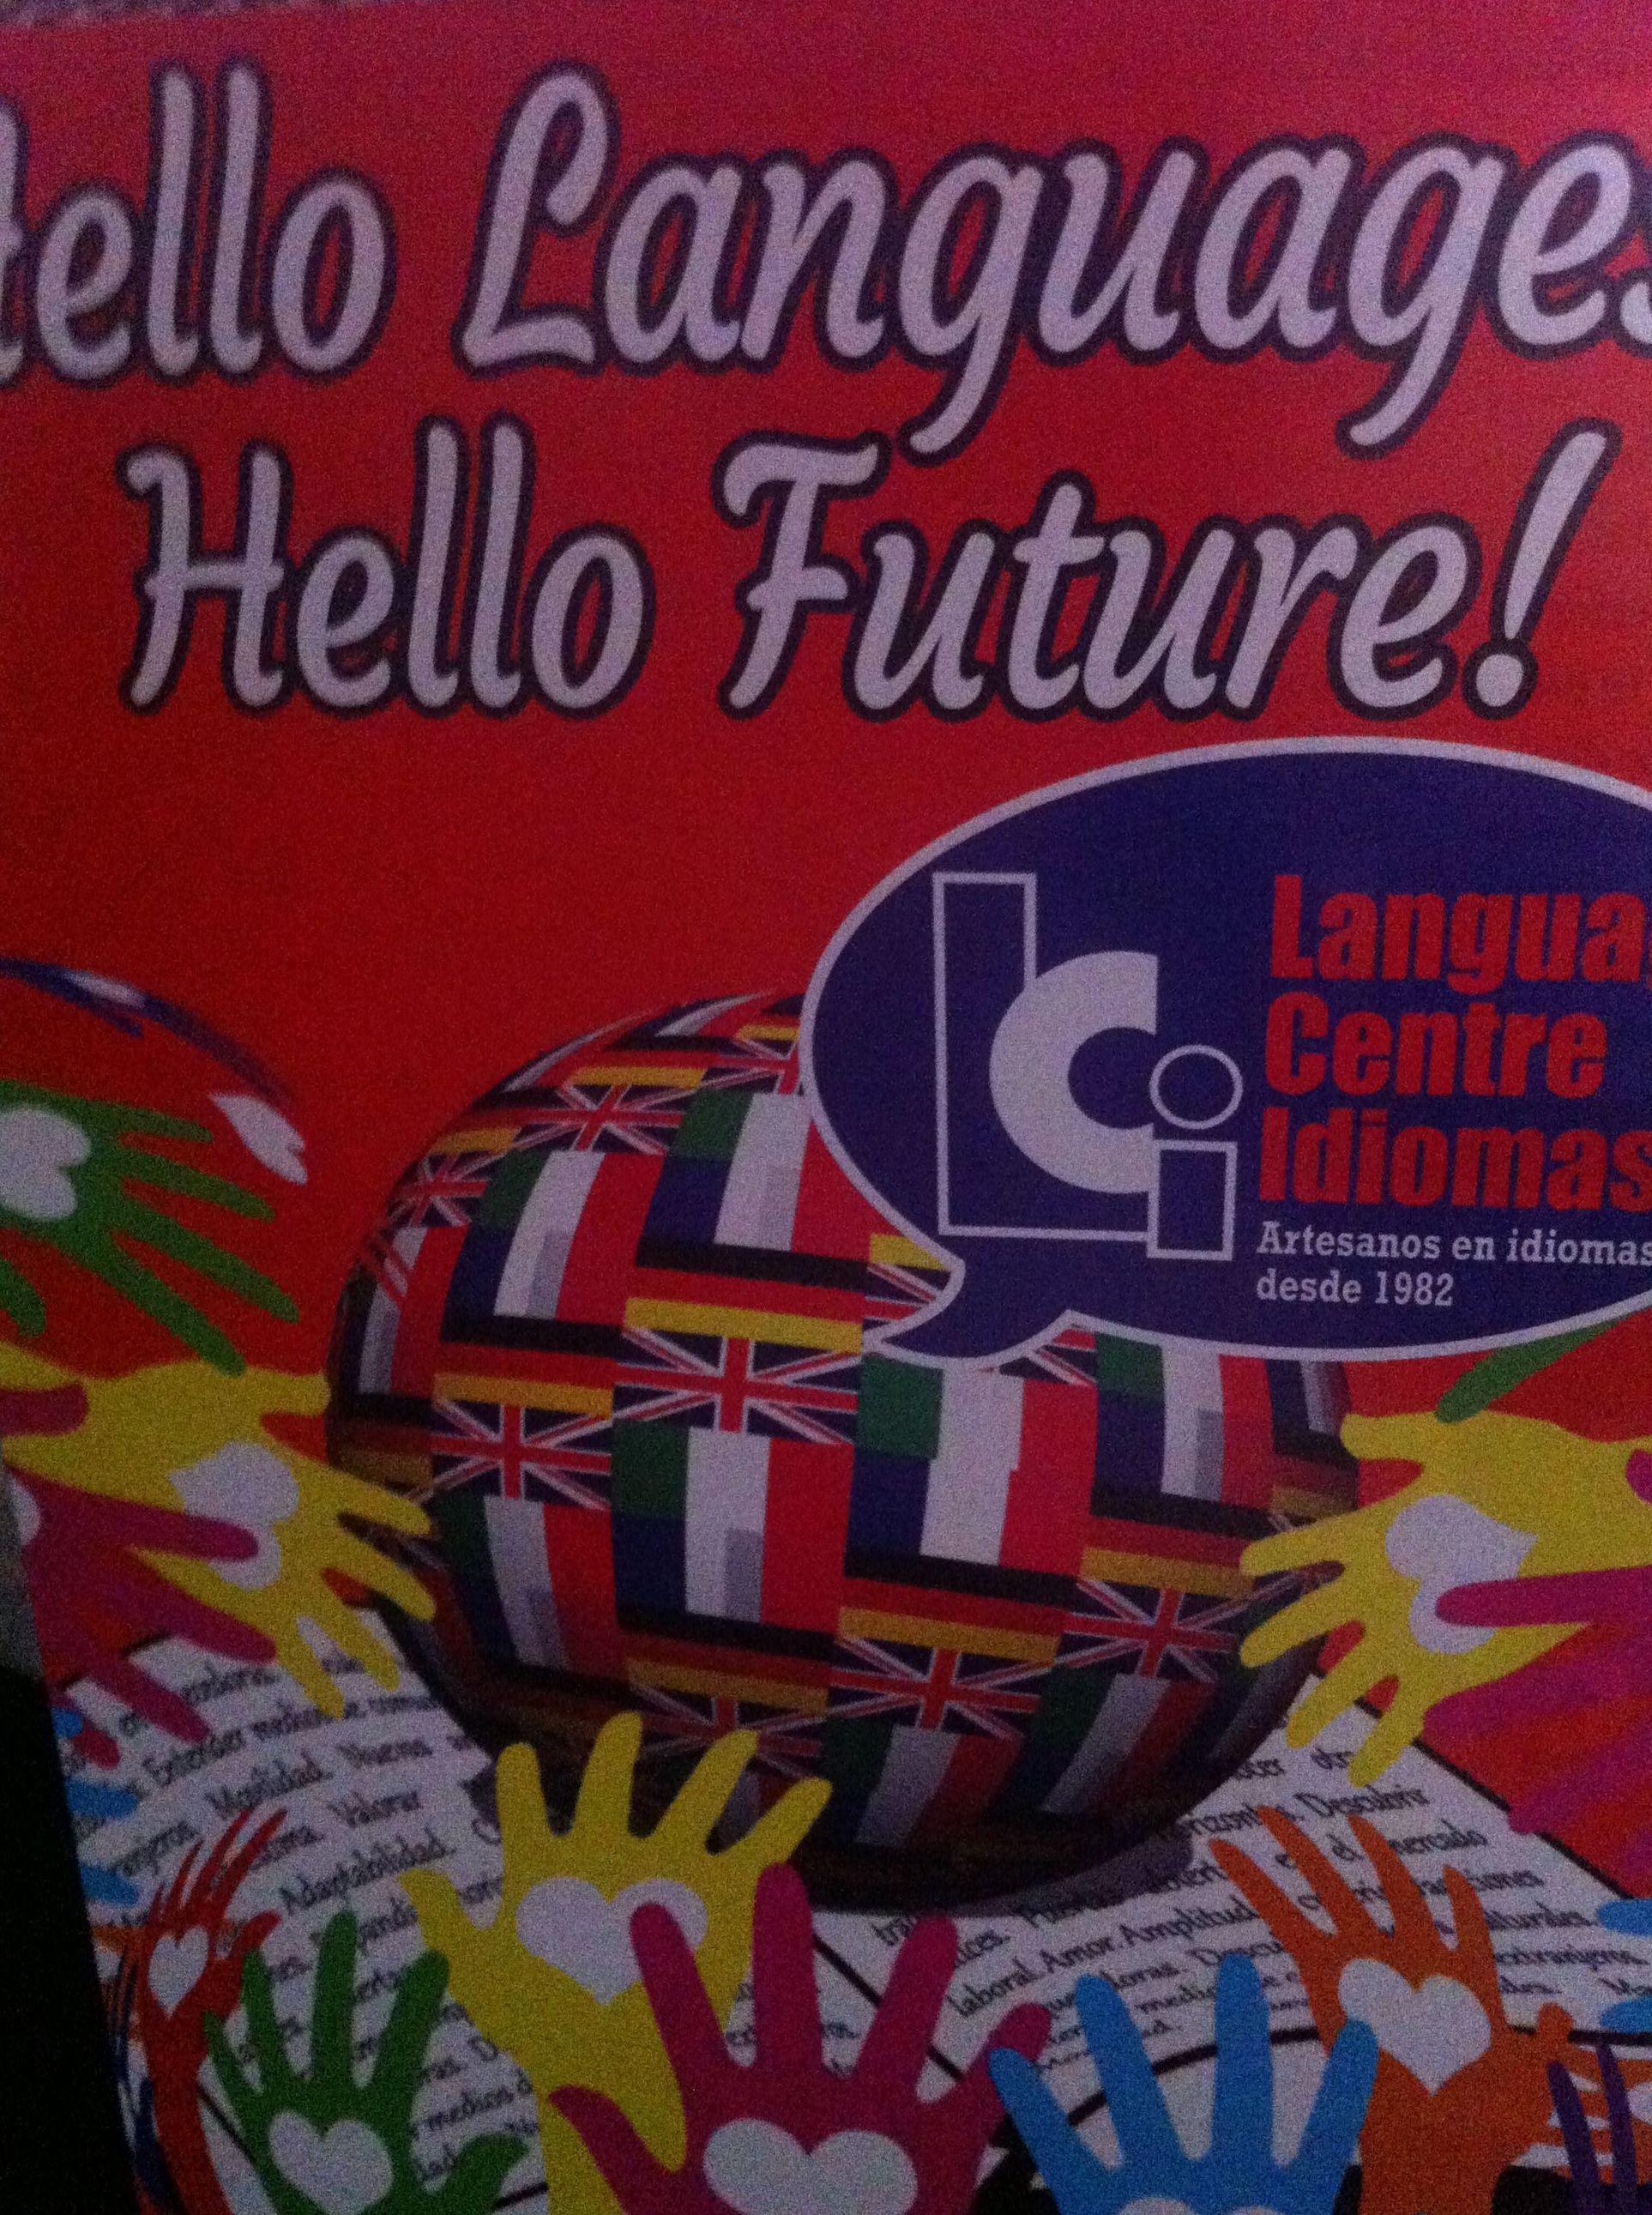 Academias de idiomas Aláquas. Language Centre Idiomas. Los idiomas son el futuro